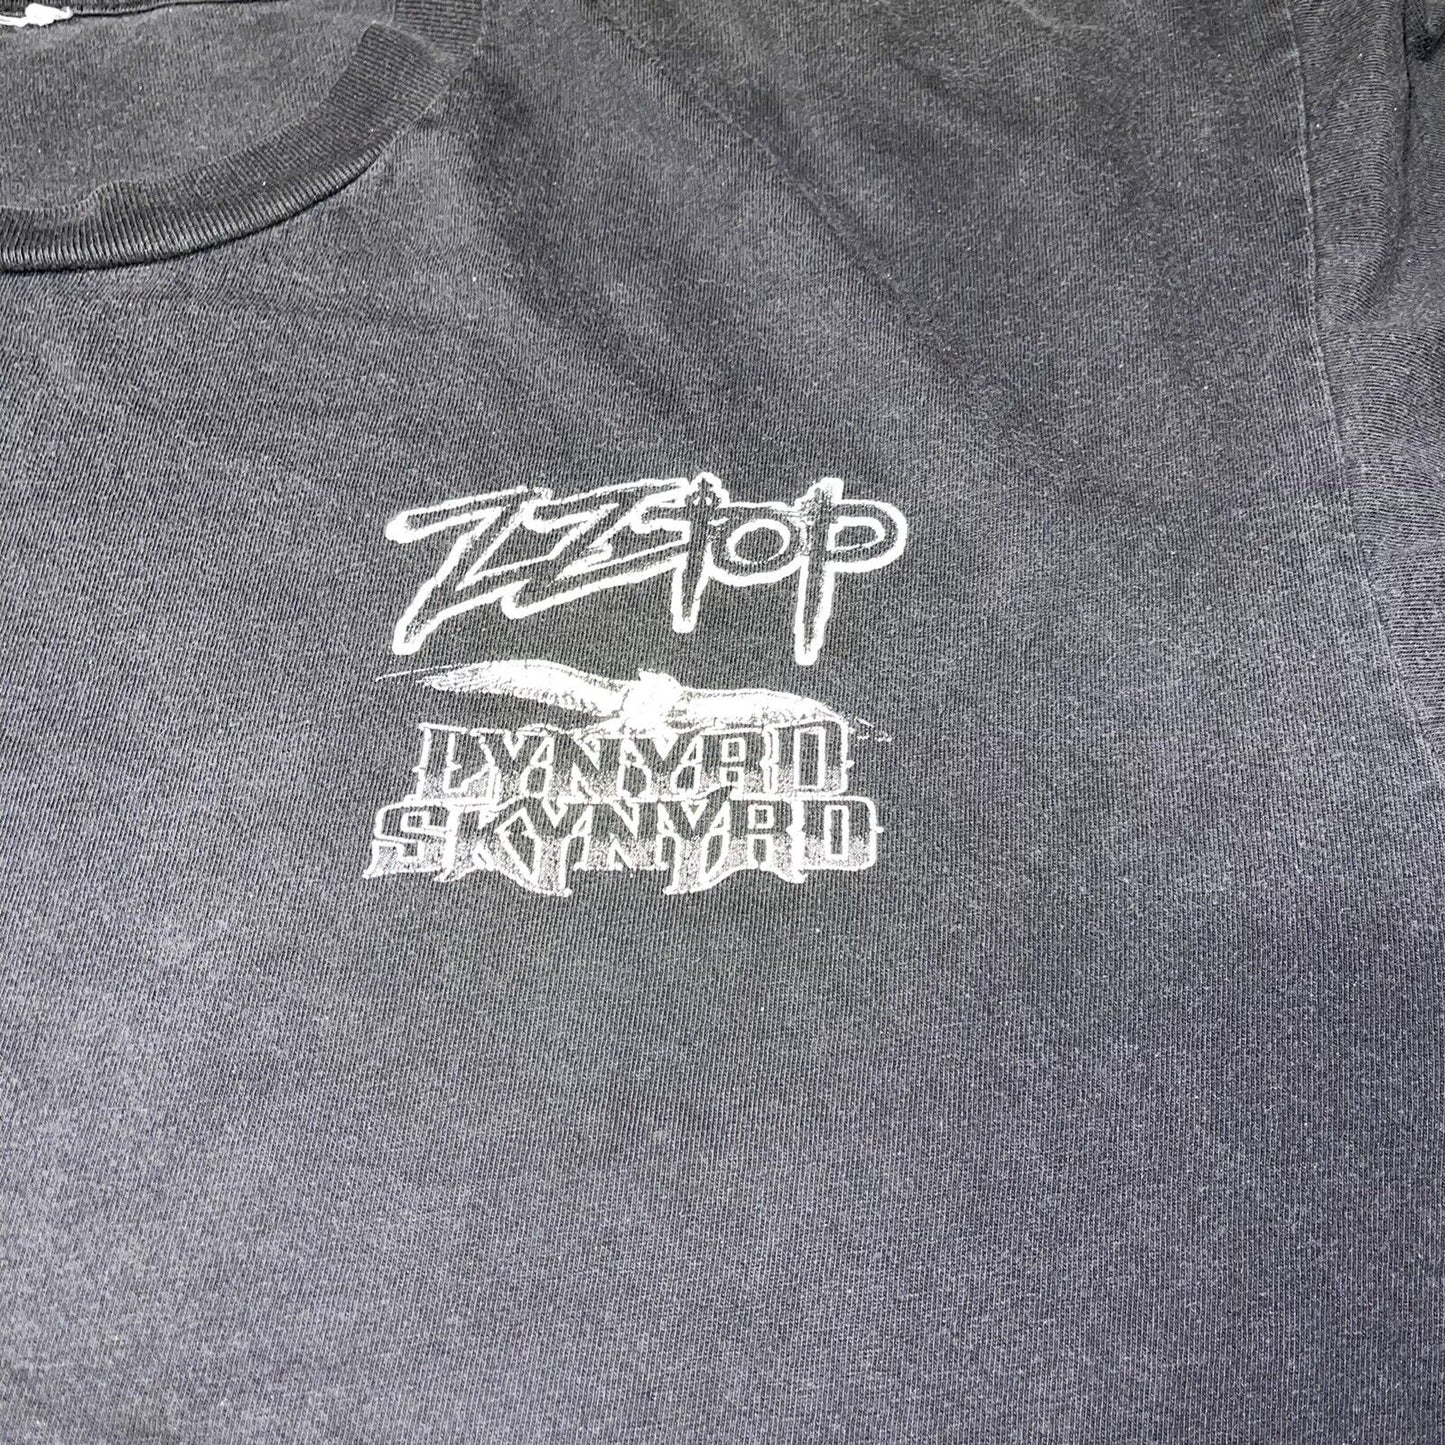 ZZ Top & Lynyrd Skynyrd local crew t-shirt - Size Xl